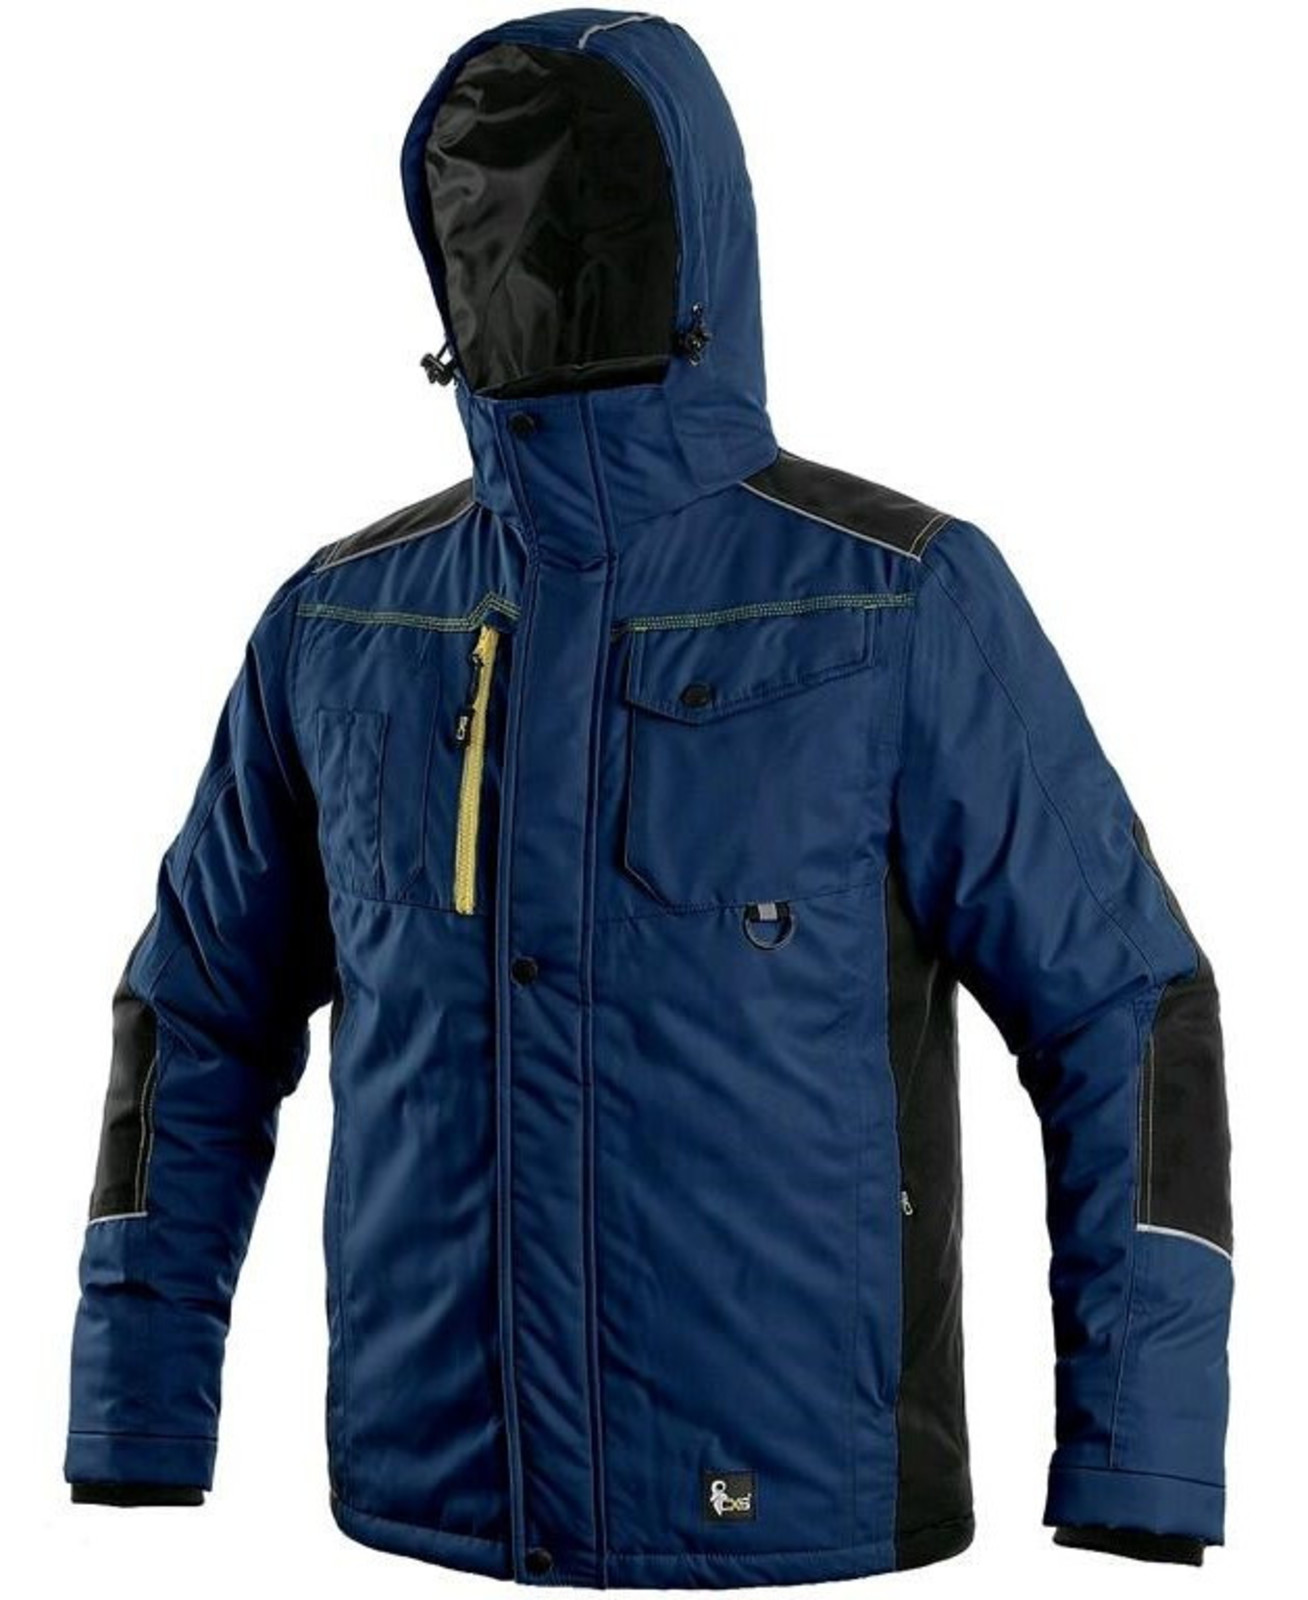 Zimná pracovná bunda CXS Baltimore - veľkosť: M, farba: tmavá modrá/čierna